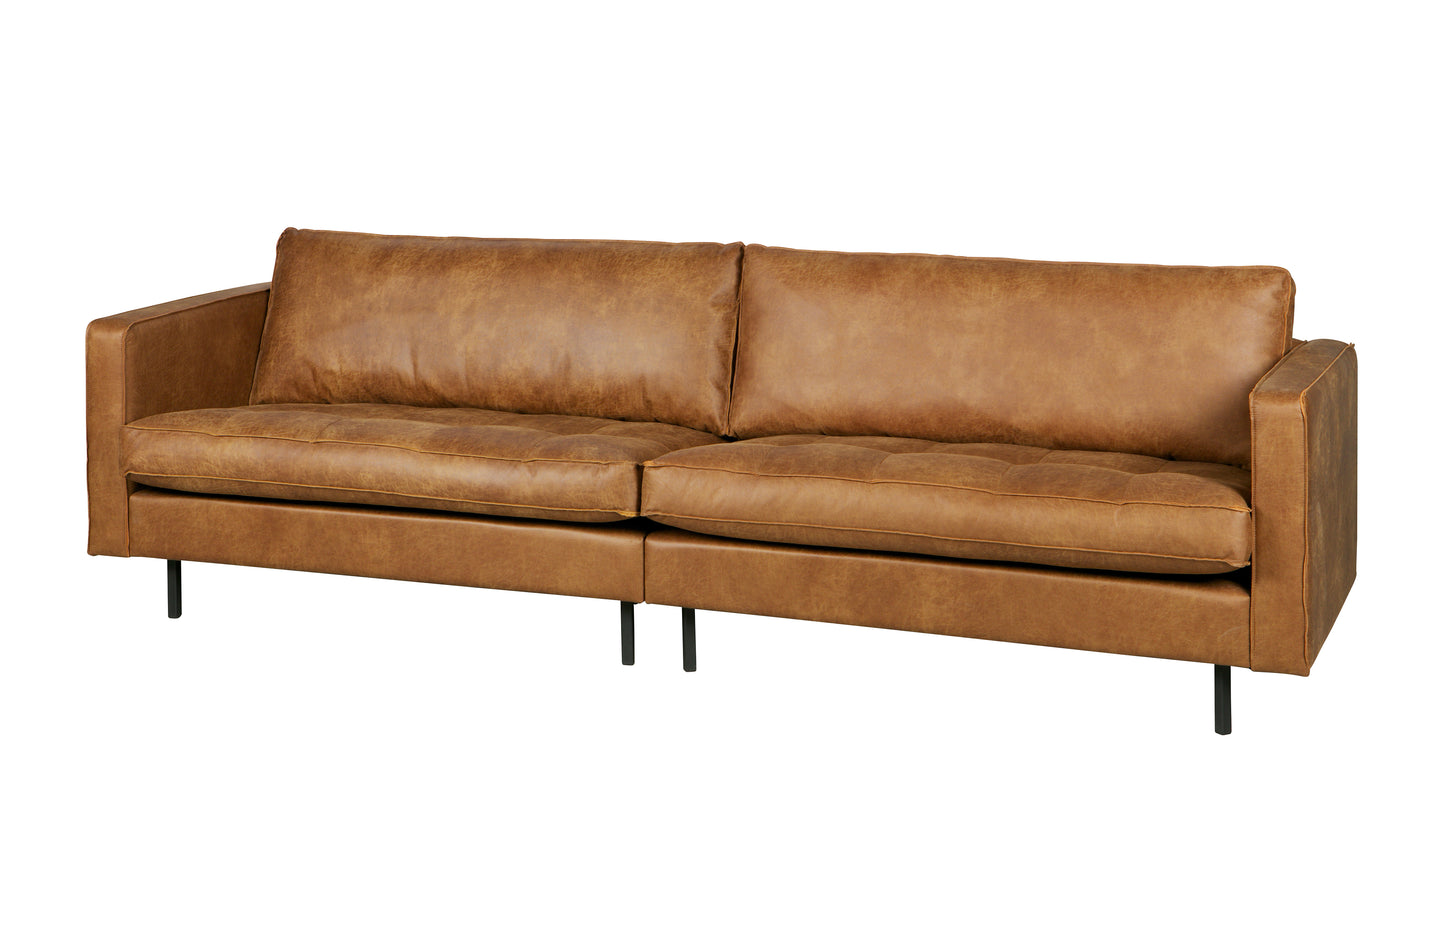 BEPUREHOME | Rodeo Classic Sofa - 3-personers soffa, Cognac